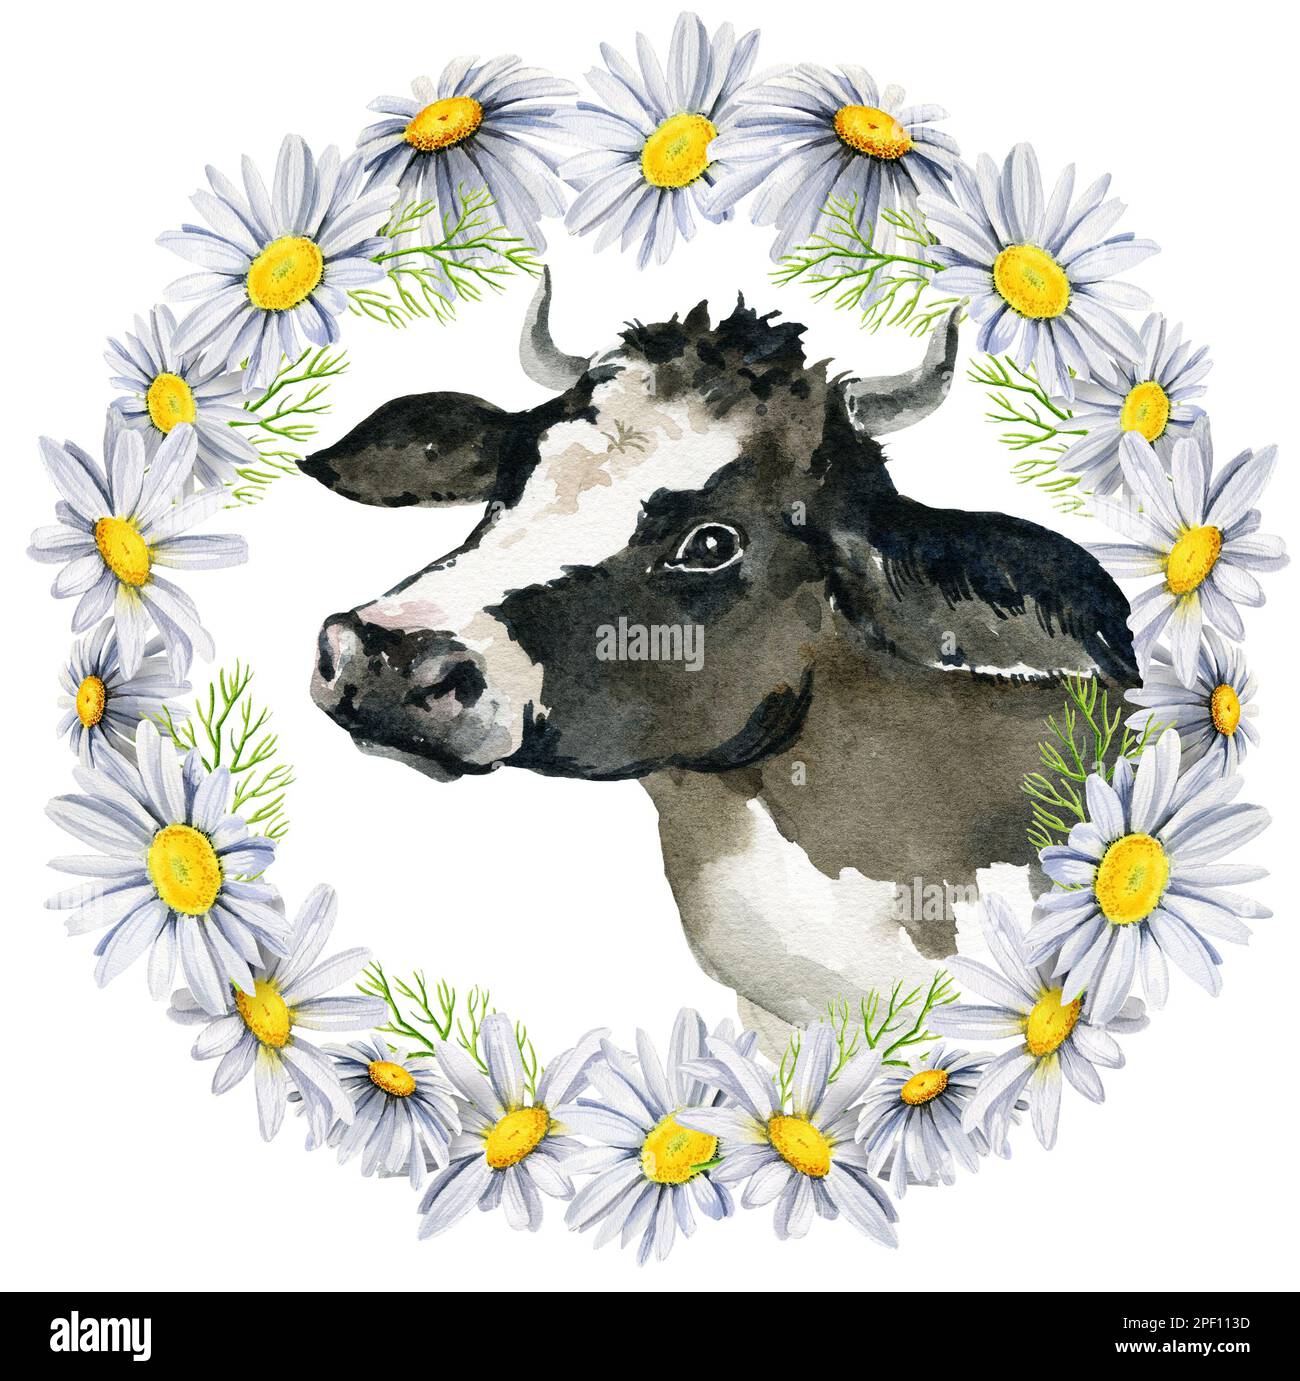 couronne ronde avec vache et pâquerettes blanches et noires, fleurs sauvages, aquarelle dessin à la main, cadre rond, spase pour le texte. Banque D'Images